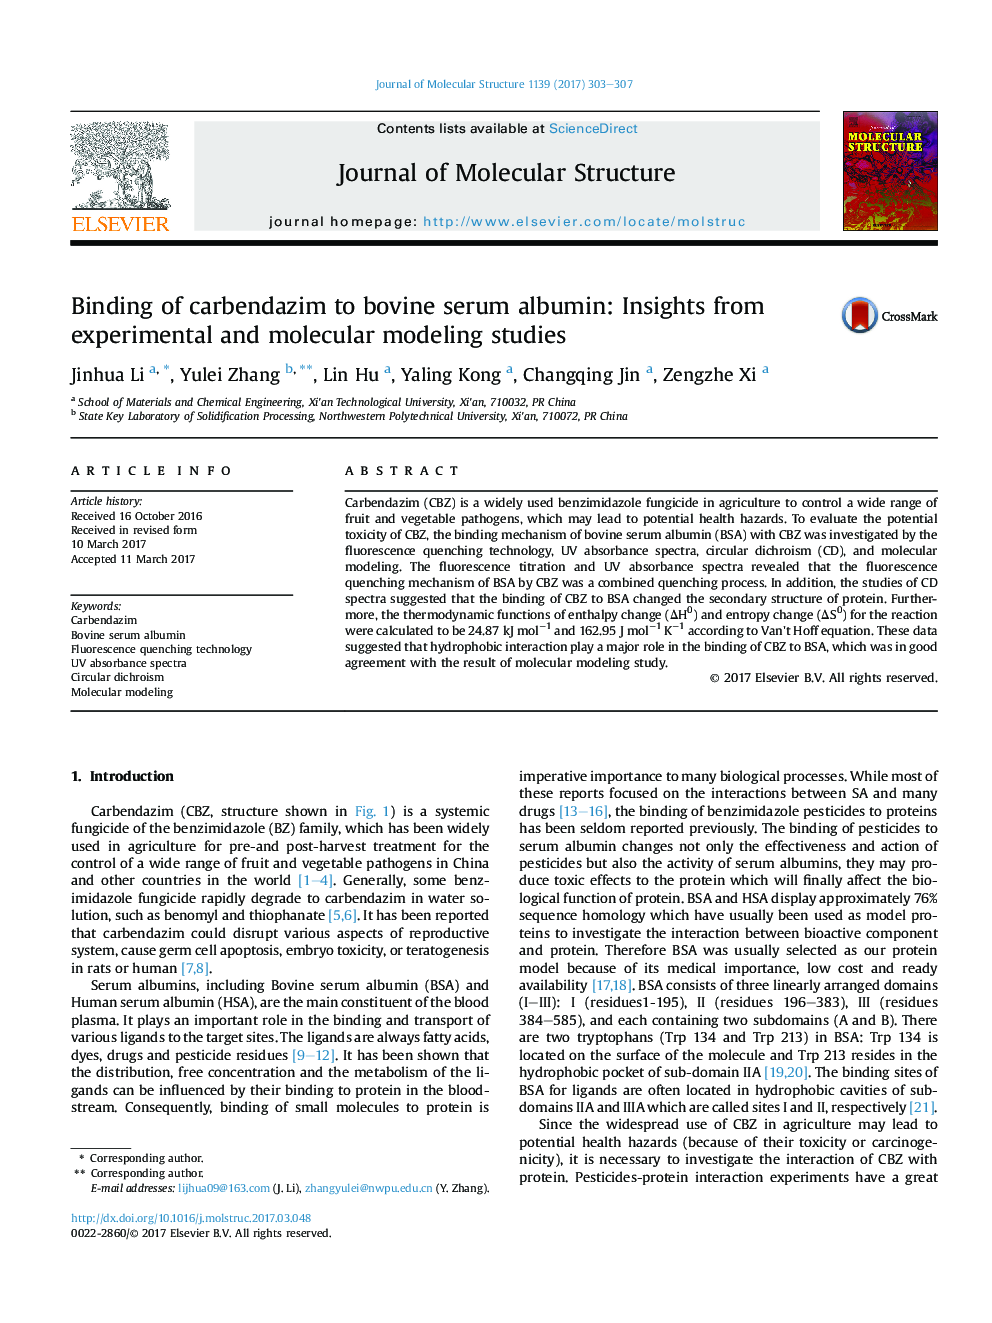 اتصال کربندازیم به آلبومین سرم گاو: بینش از مطالعات مدلسازی آزمایشگاهی و مولکولی 